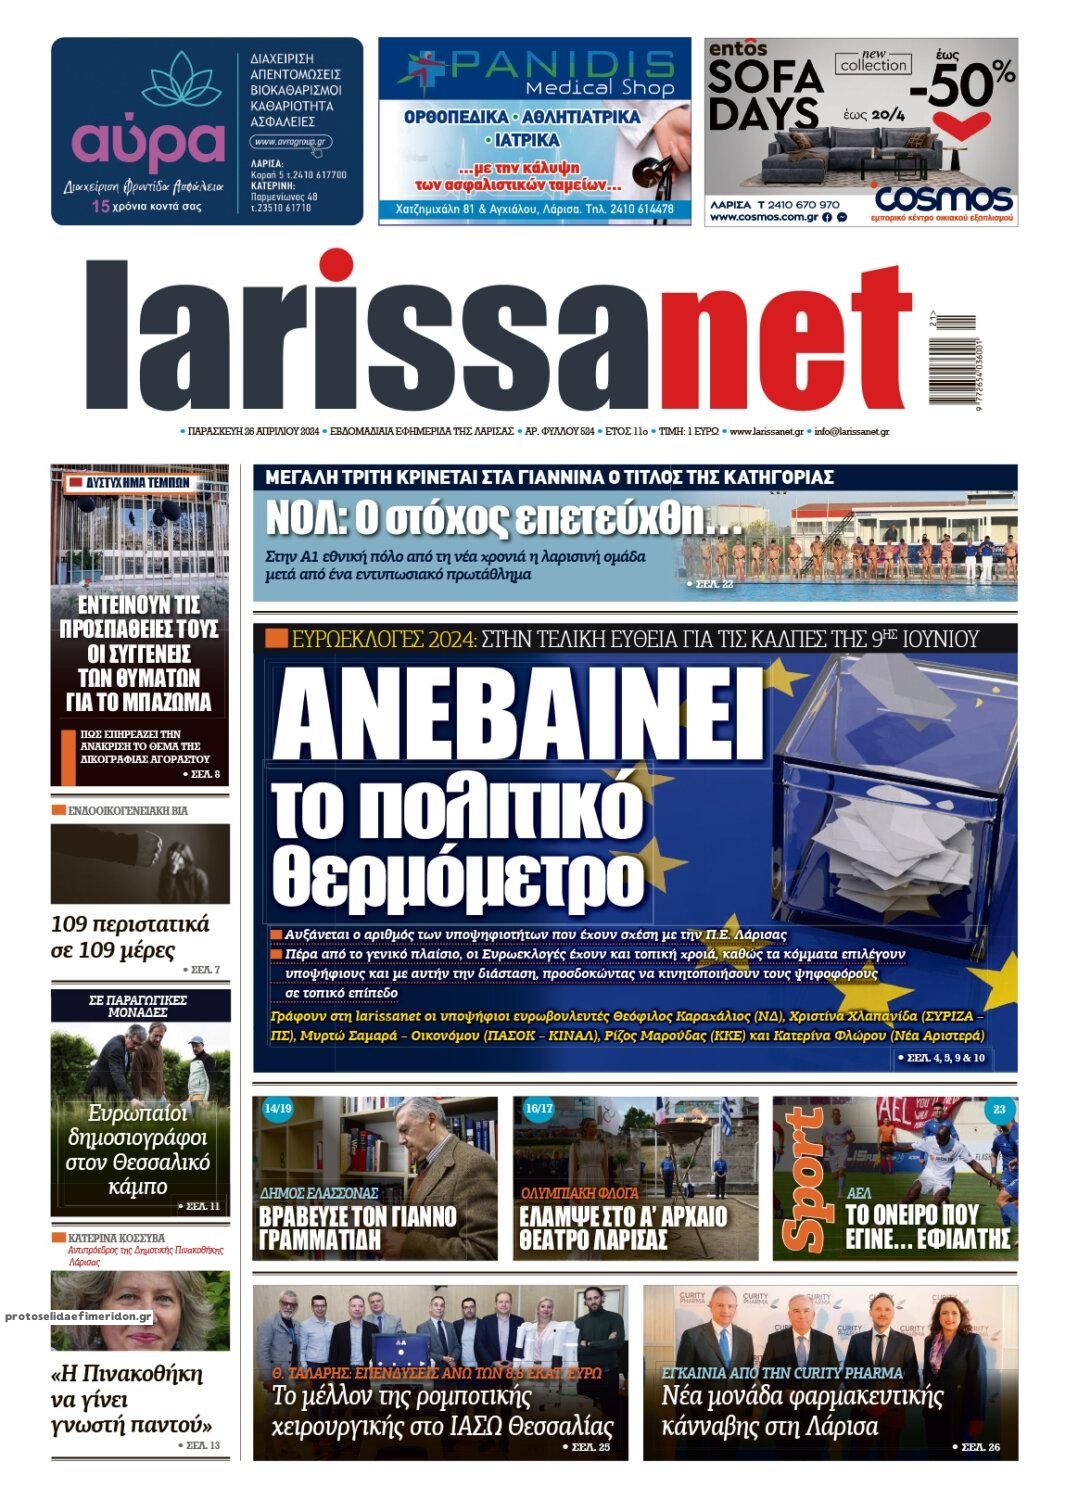 Πρωτοσέλιδο εφημερίδας Larissanet